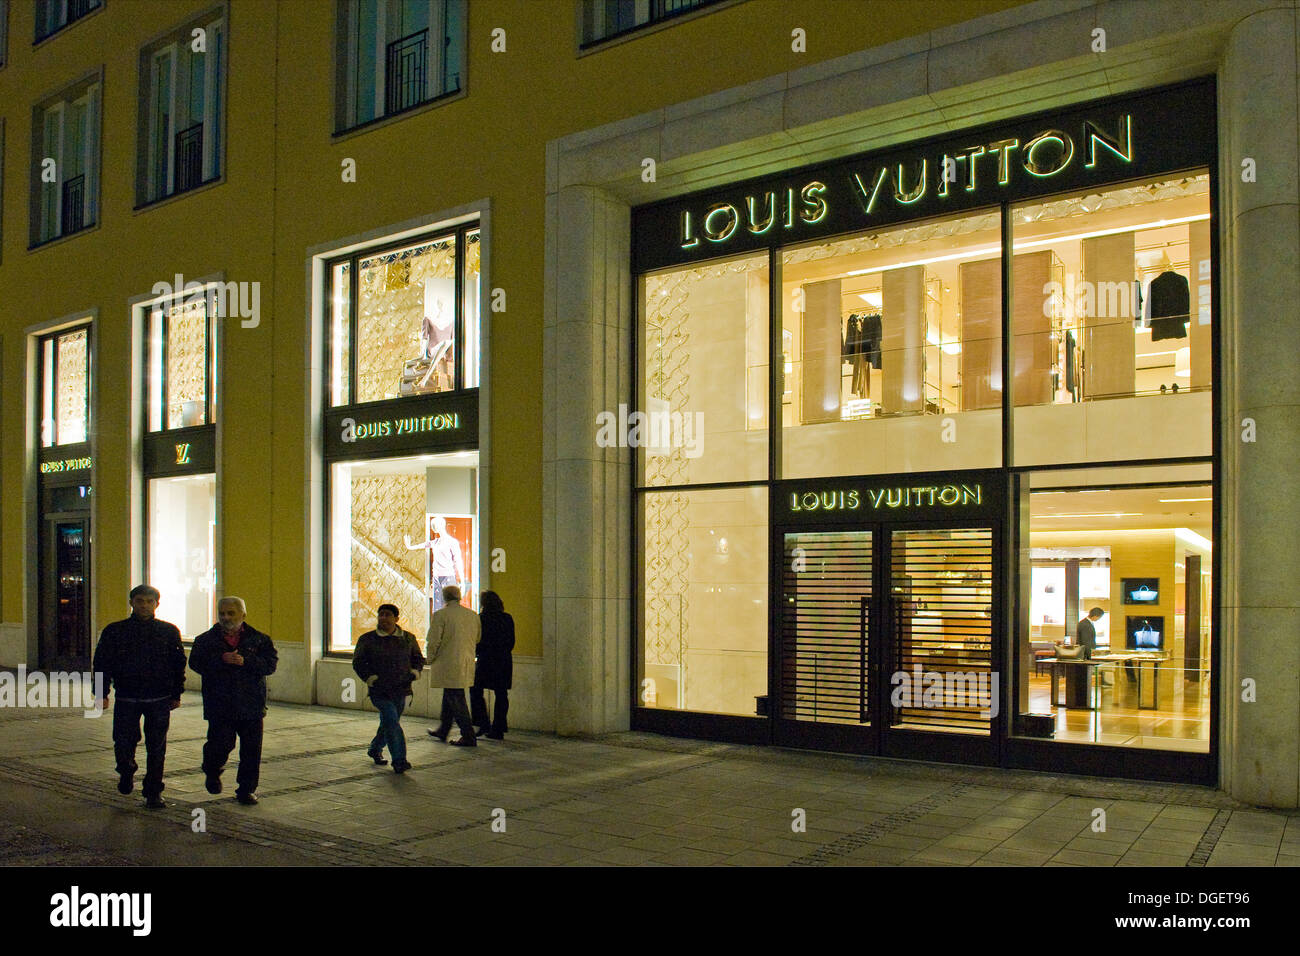 Deutschland, Bayern, München, Louis Vuitton-Geschäft Stockfotografie - Alamy